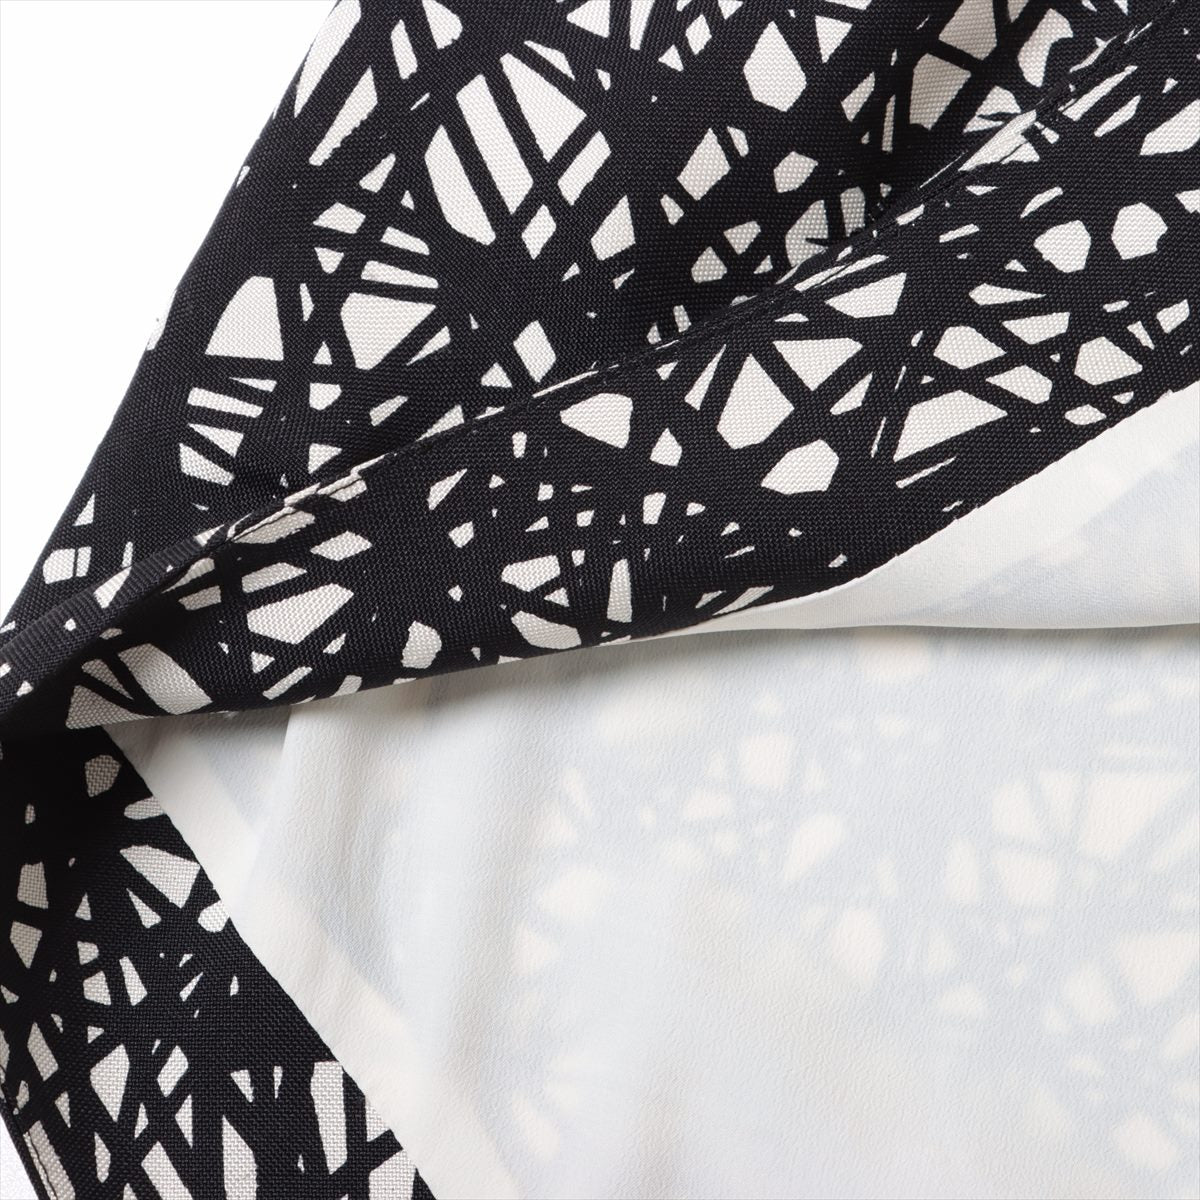 Balenciaga 13 years Silk Cut & Sew 36 Ladies' Black × White  343034